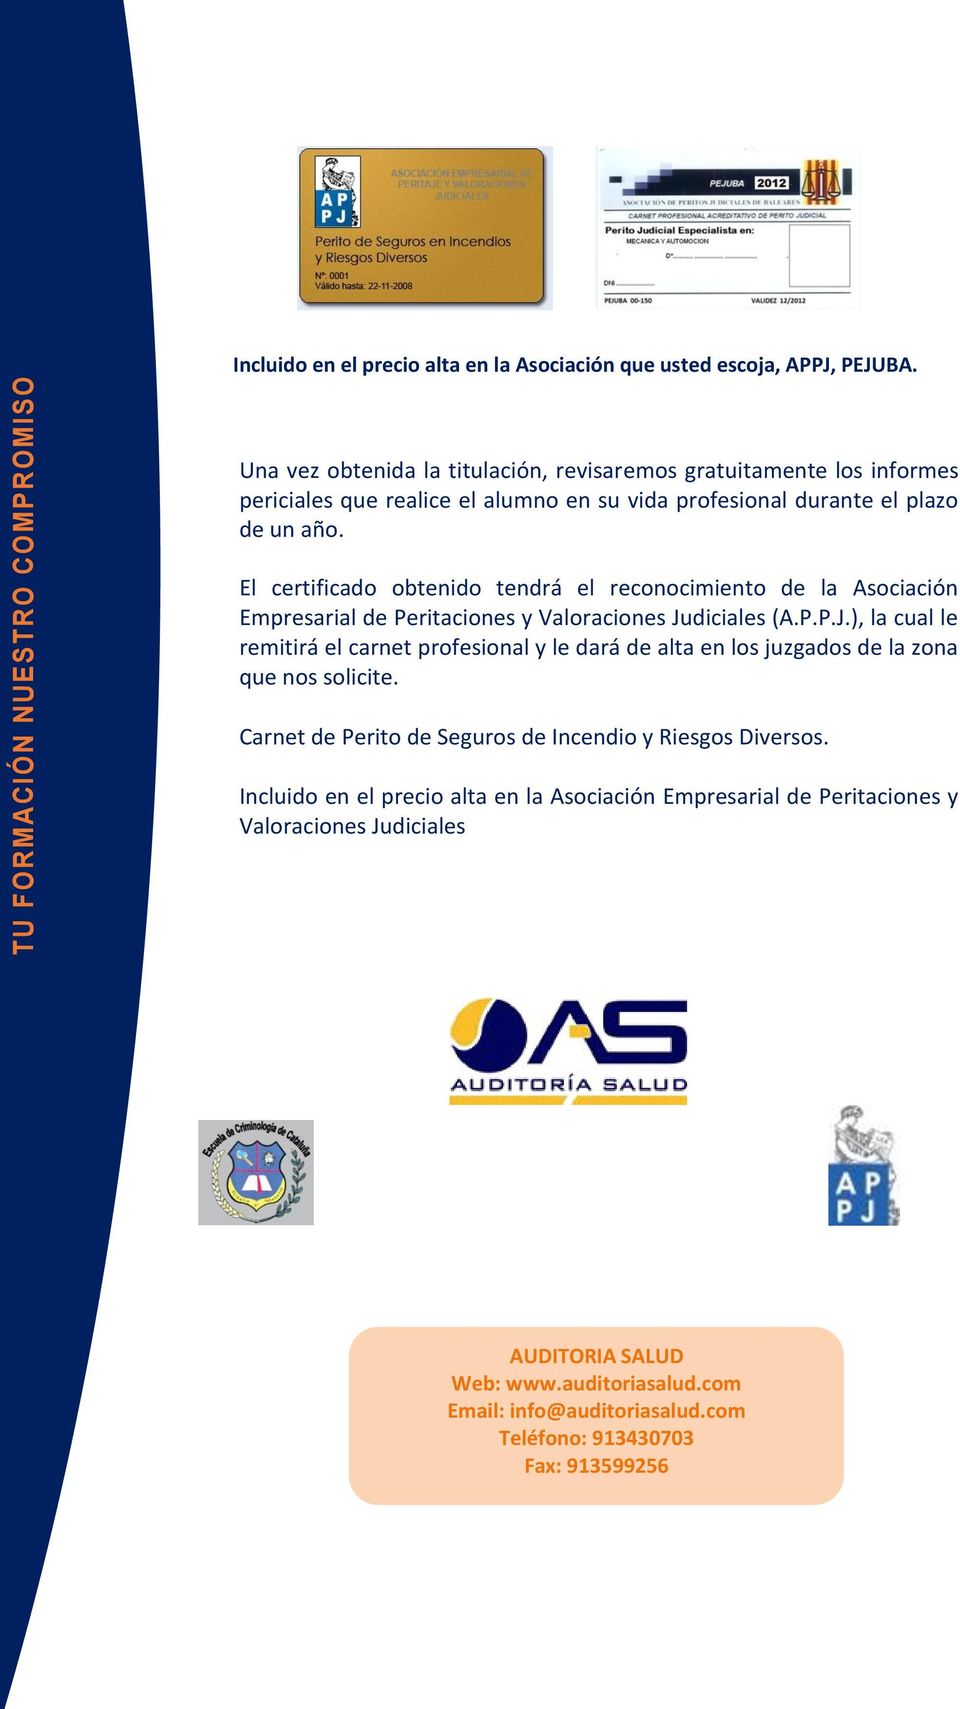 El certificado obtenido tendrá el reconocimiento de la Asociación Empresarial de Peritaciones y Valoraciones Ju